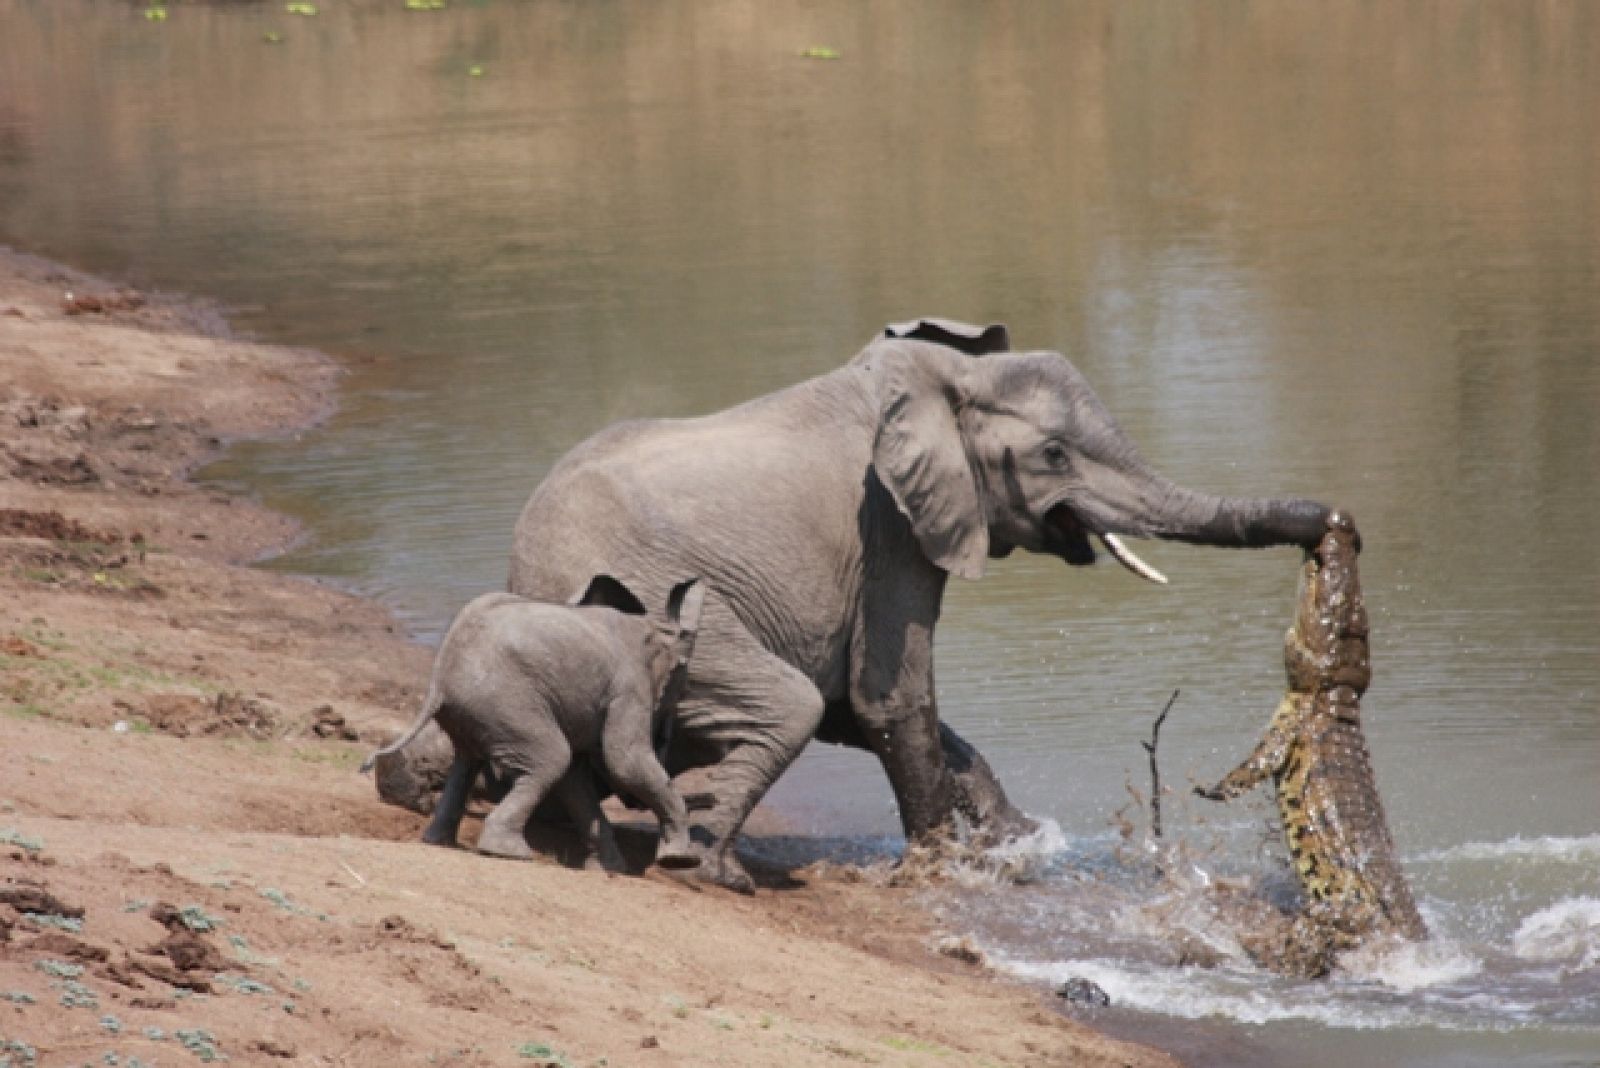 El cocodrilo se aferra a la trompa del elefante para intentar meterlo en el agua